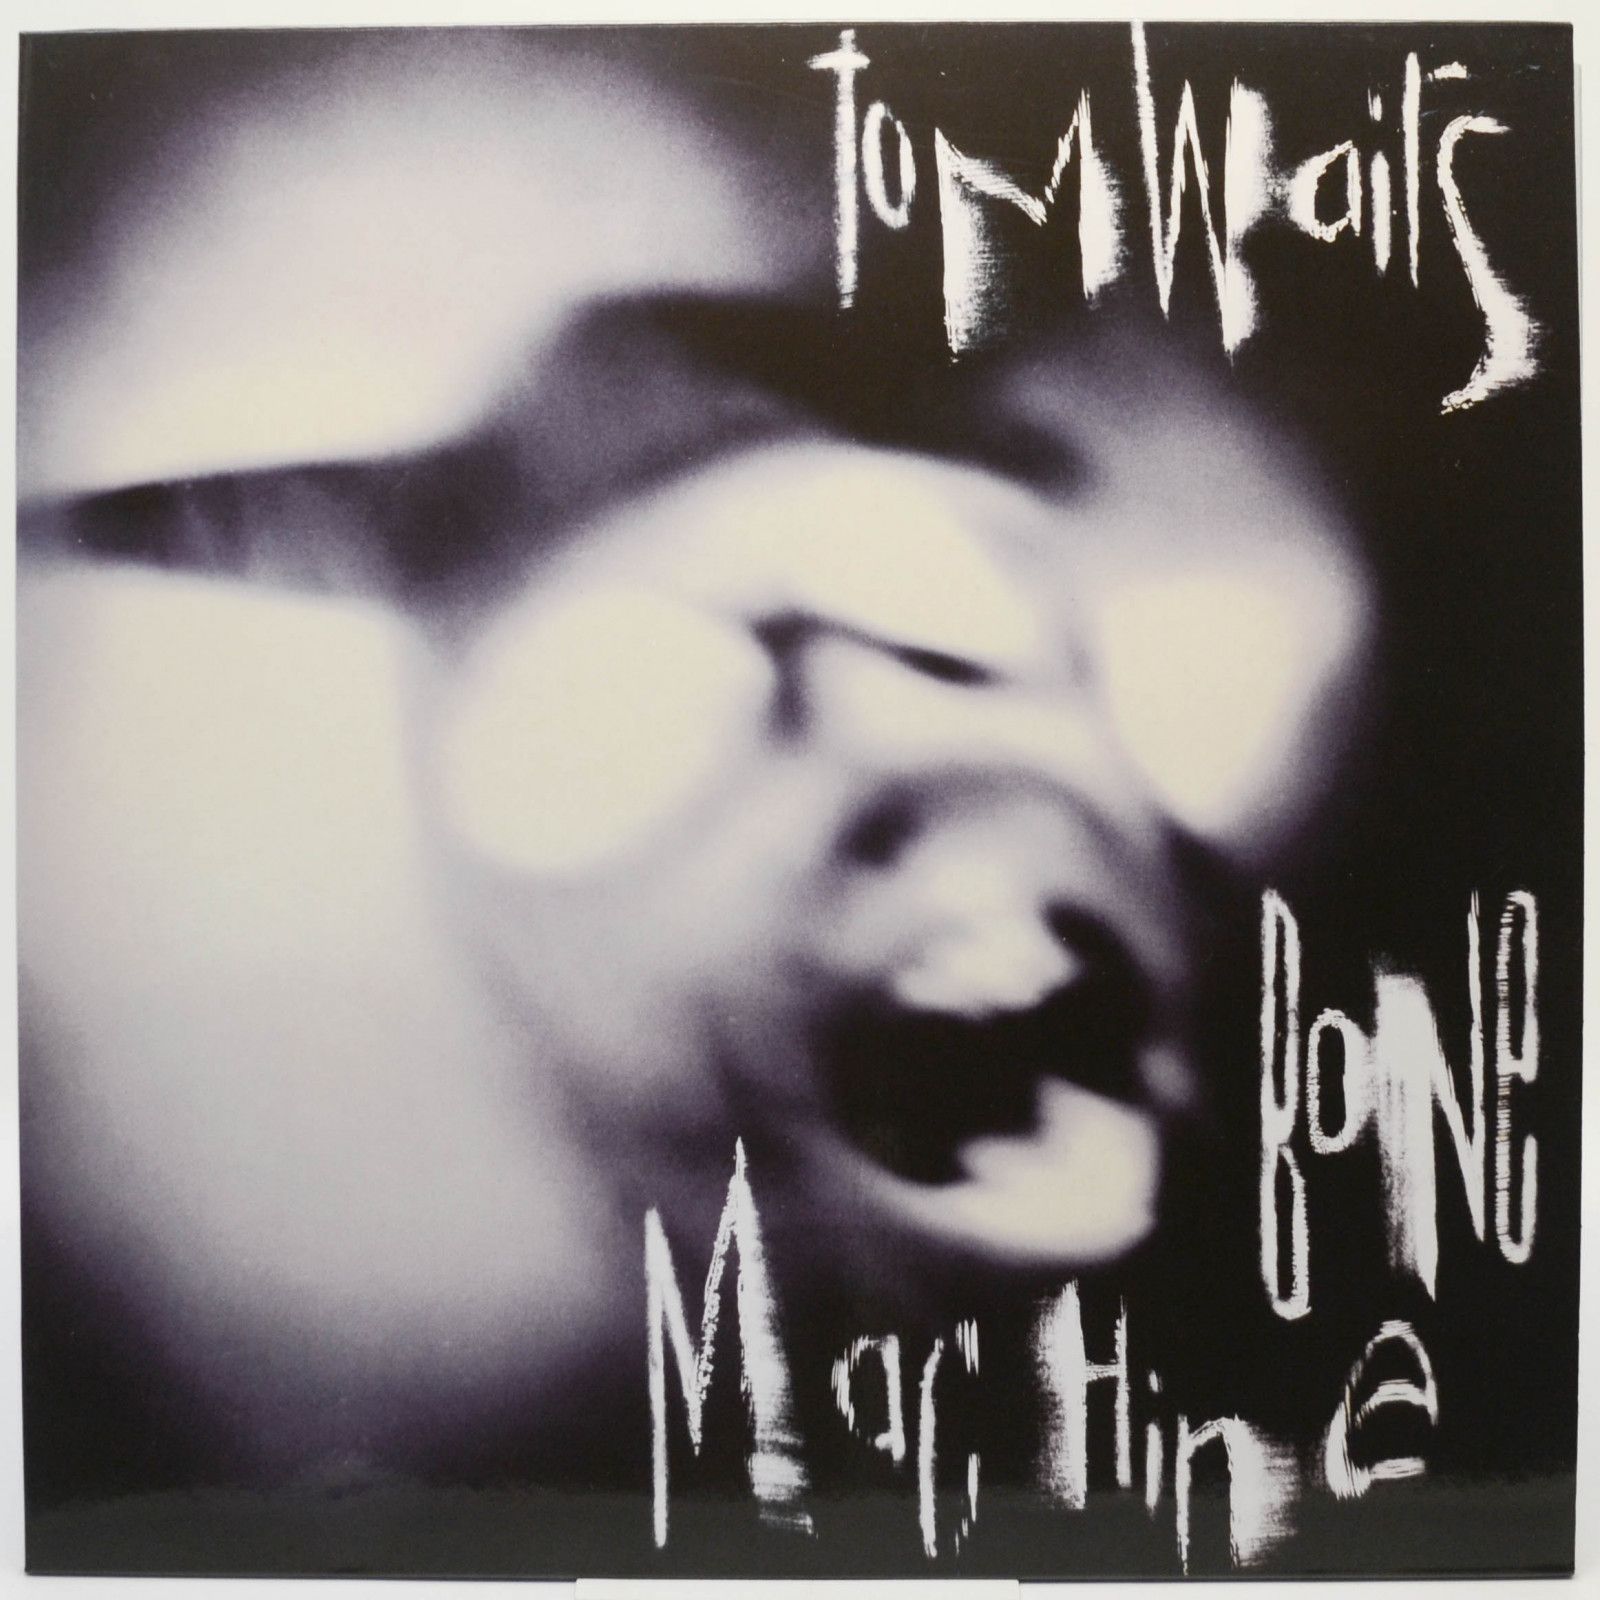 Tom Waits — Bone Machine, 1992